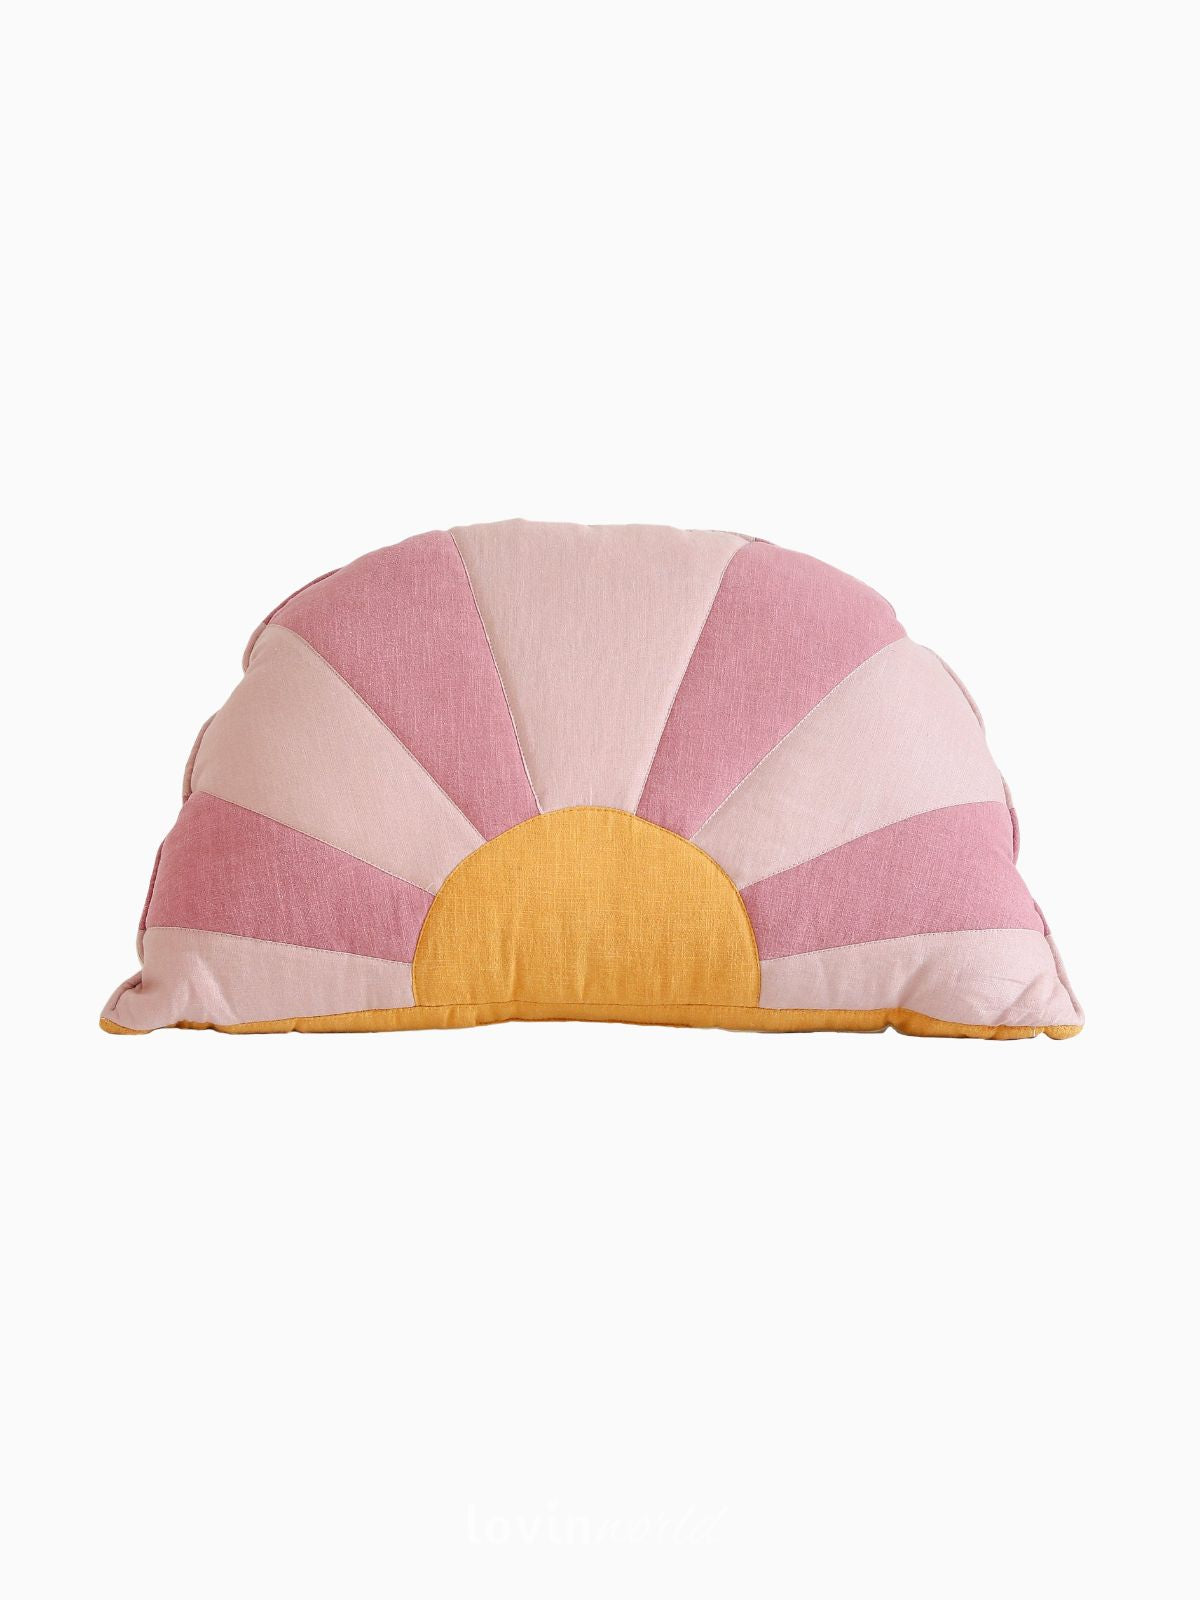 Cuscino Sole 100% lino e cotone in colore rosa e fucsia 65x42 cm.-1